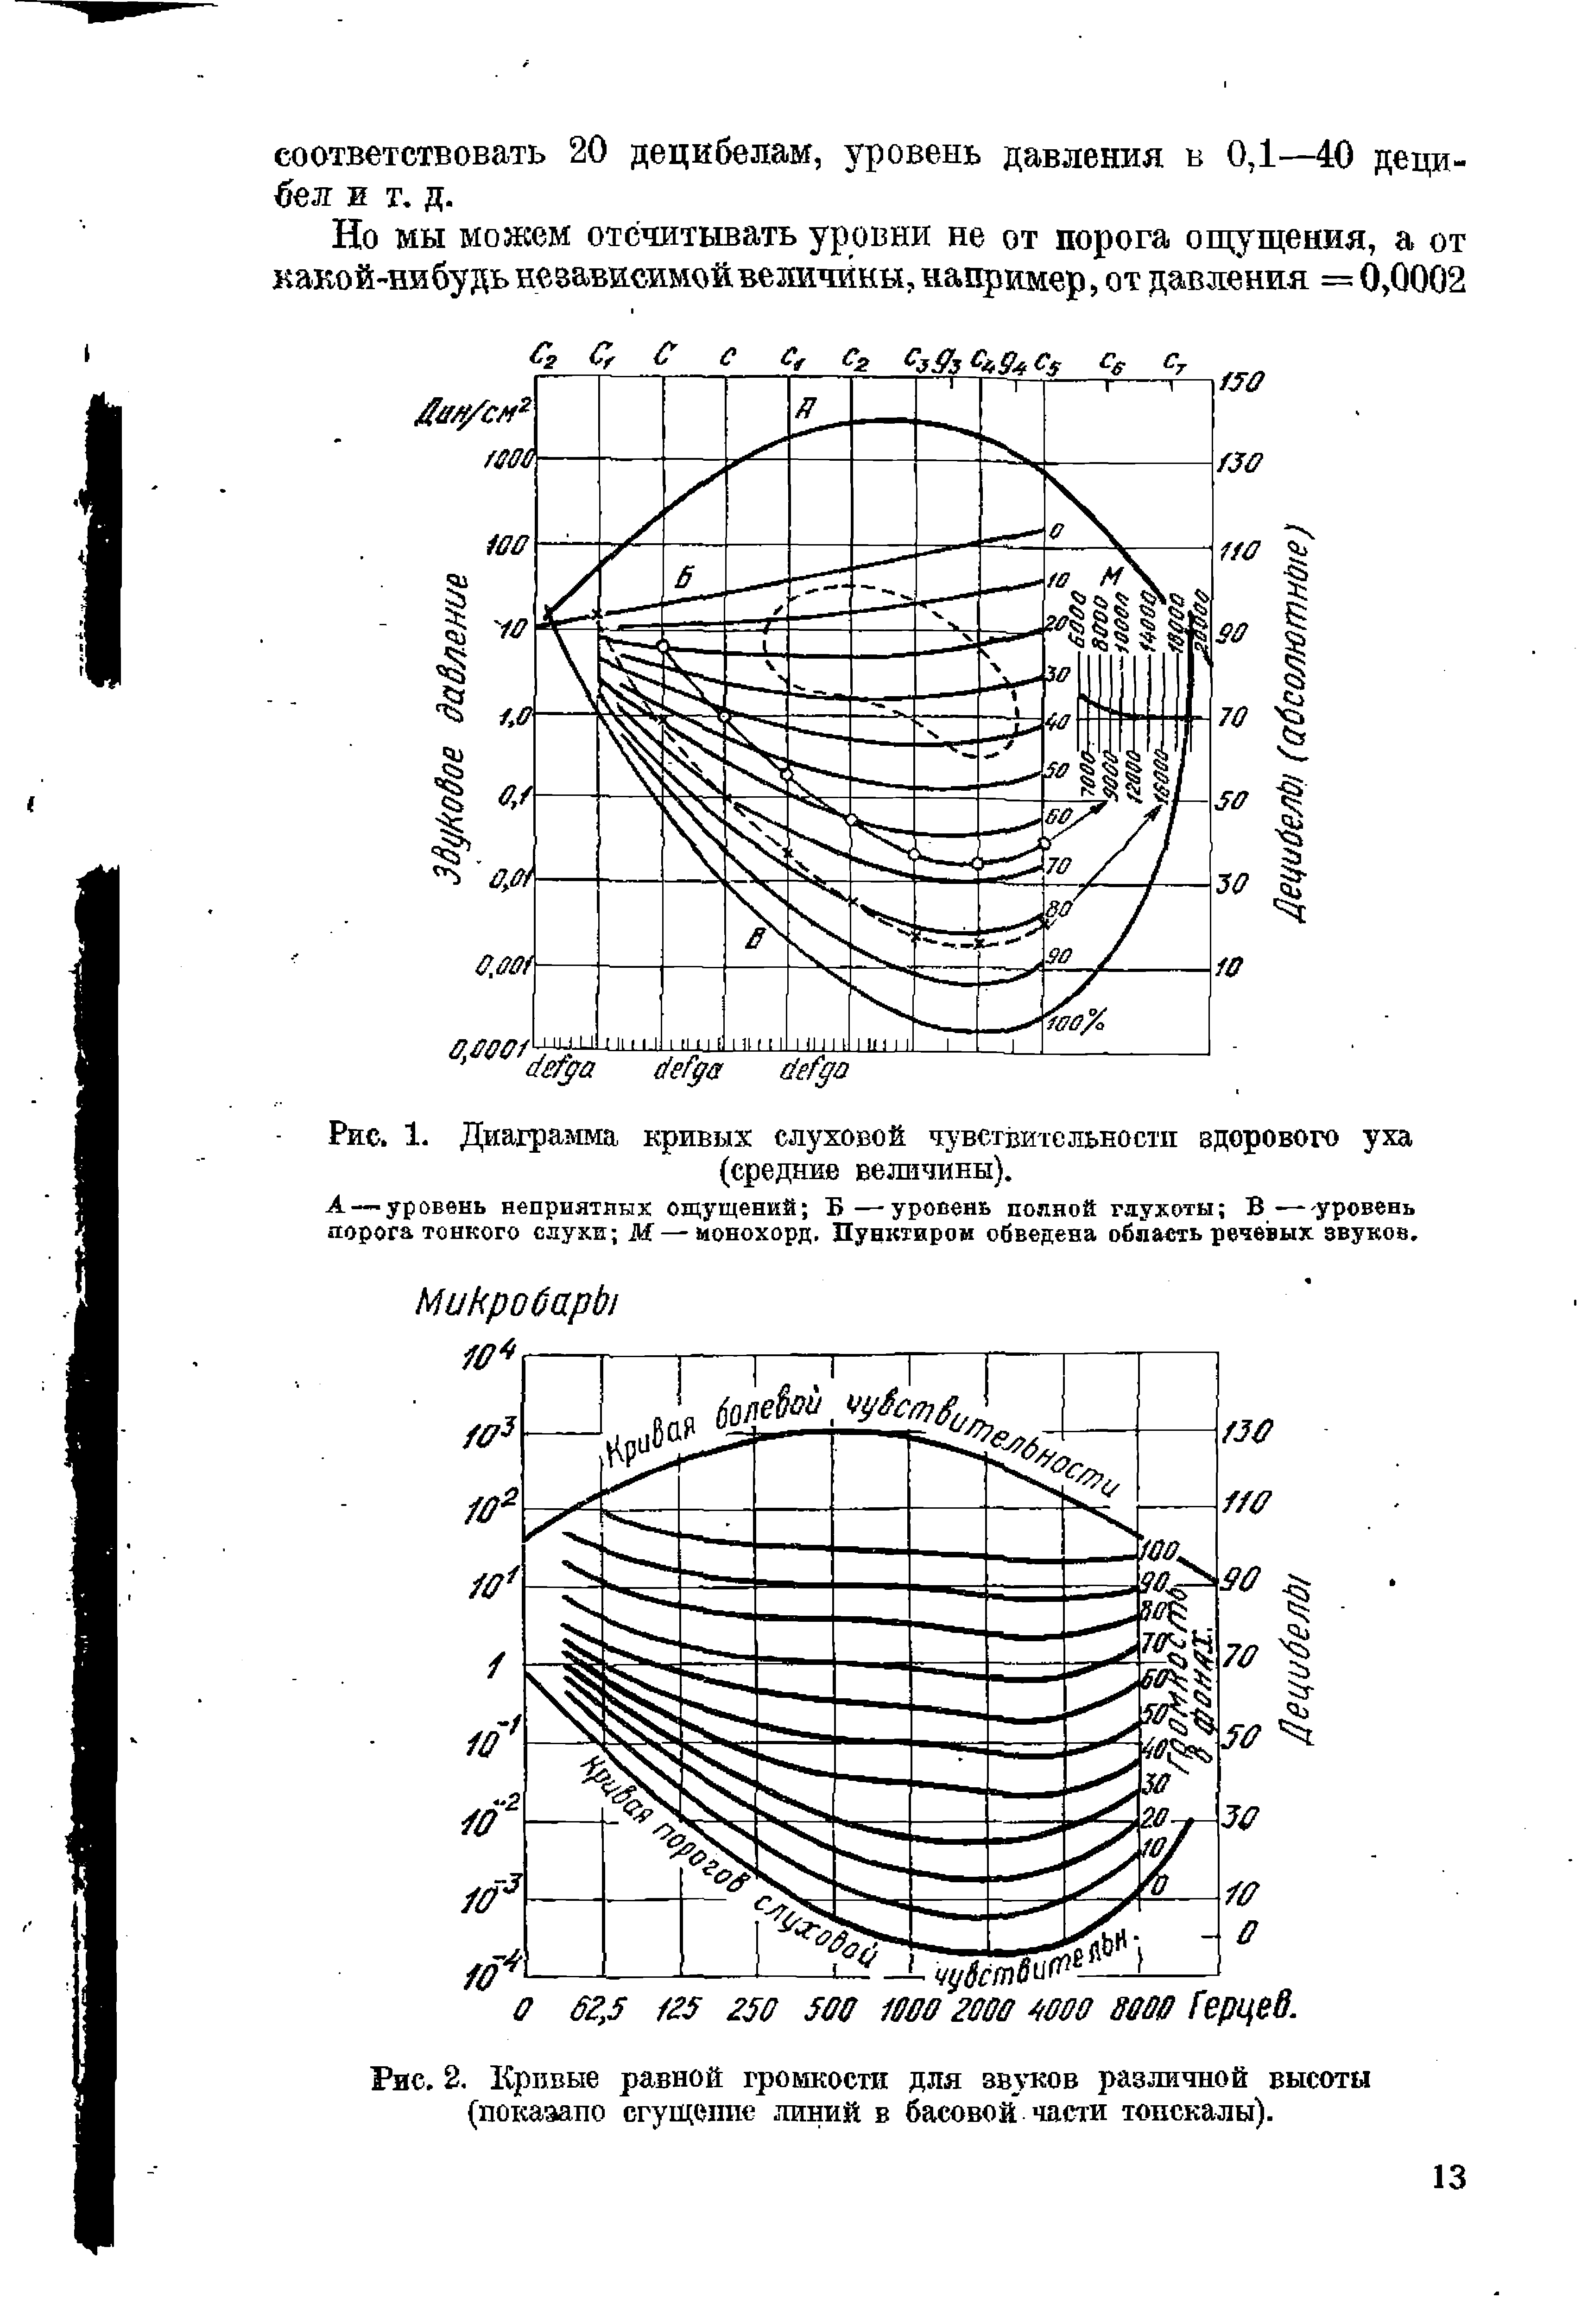 Рис. 2, Кривые равной громкости для звуков различной высоты (показало сгущеппс линий в басовой части тонскалы).